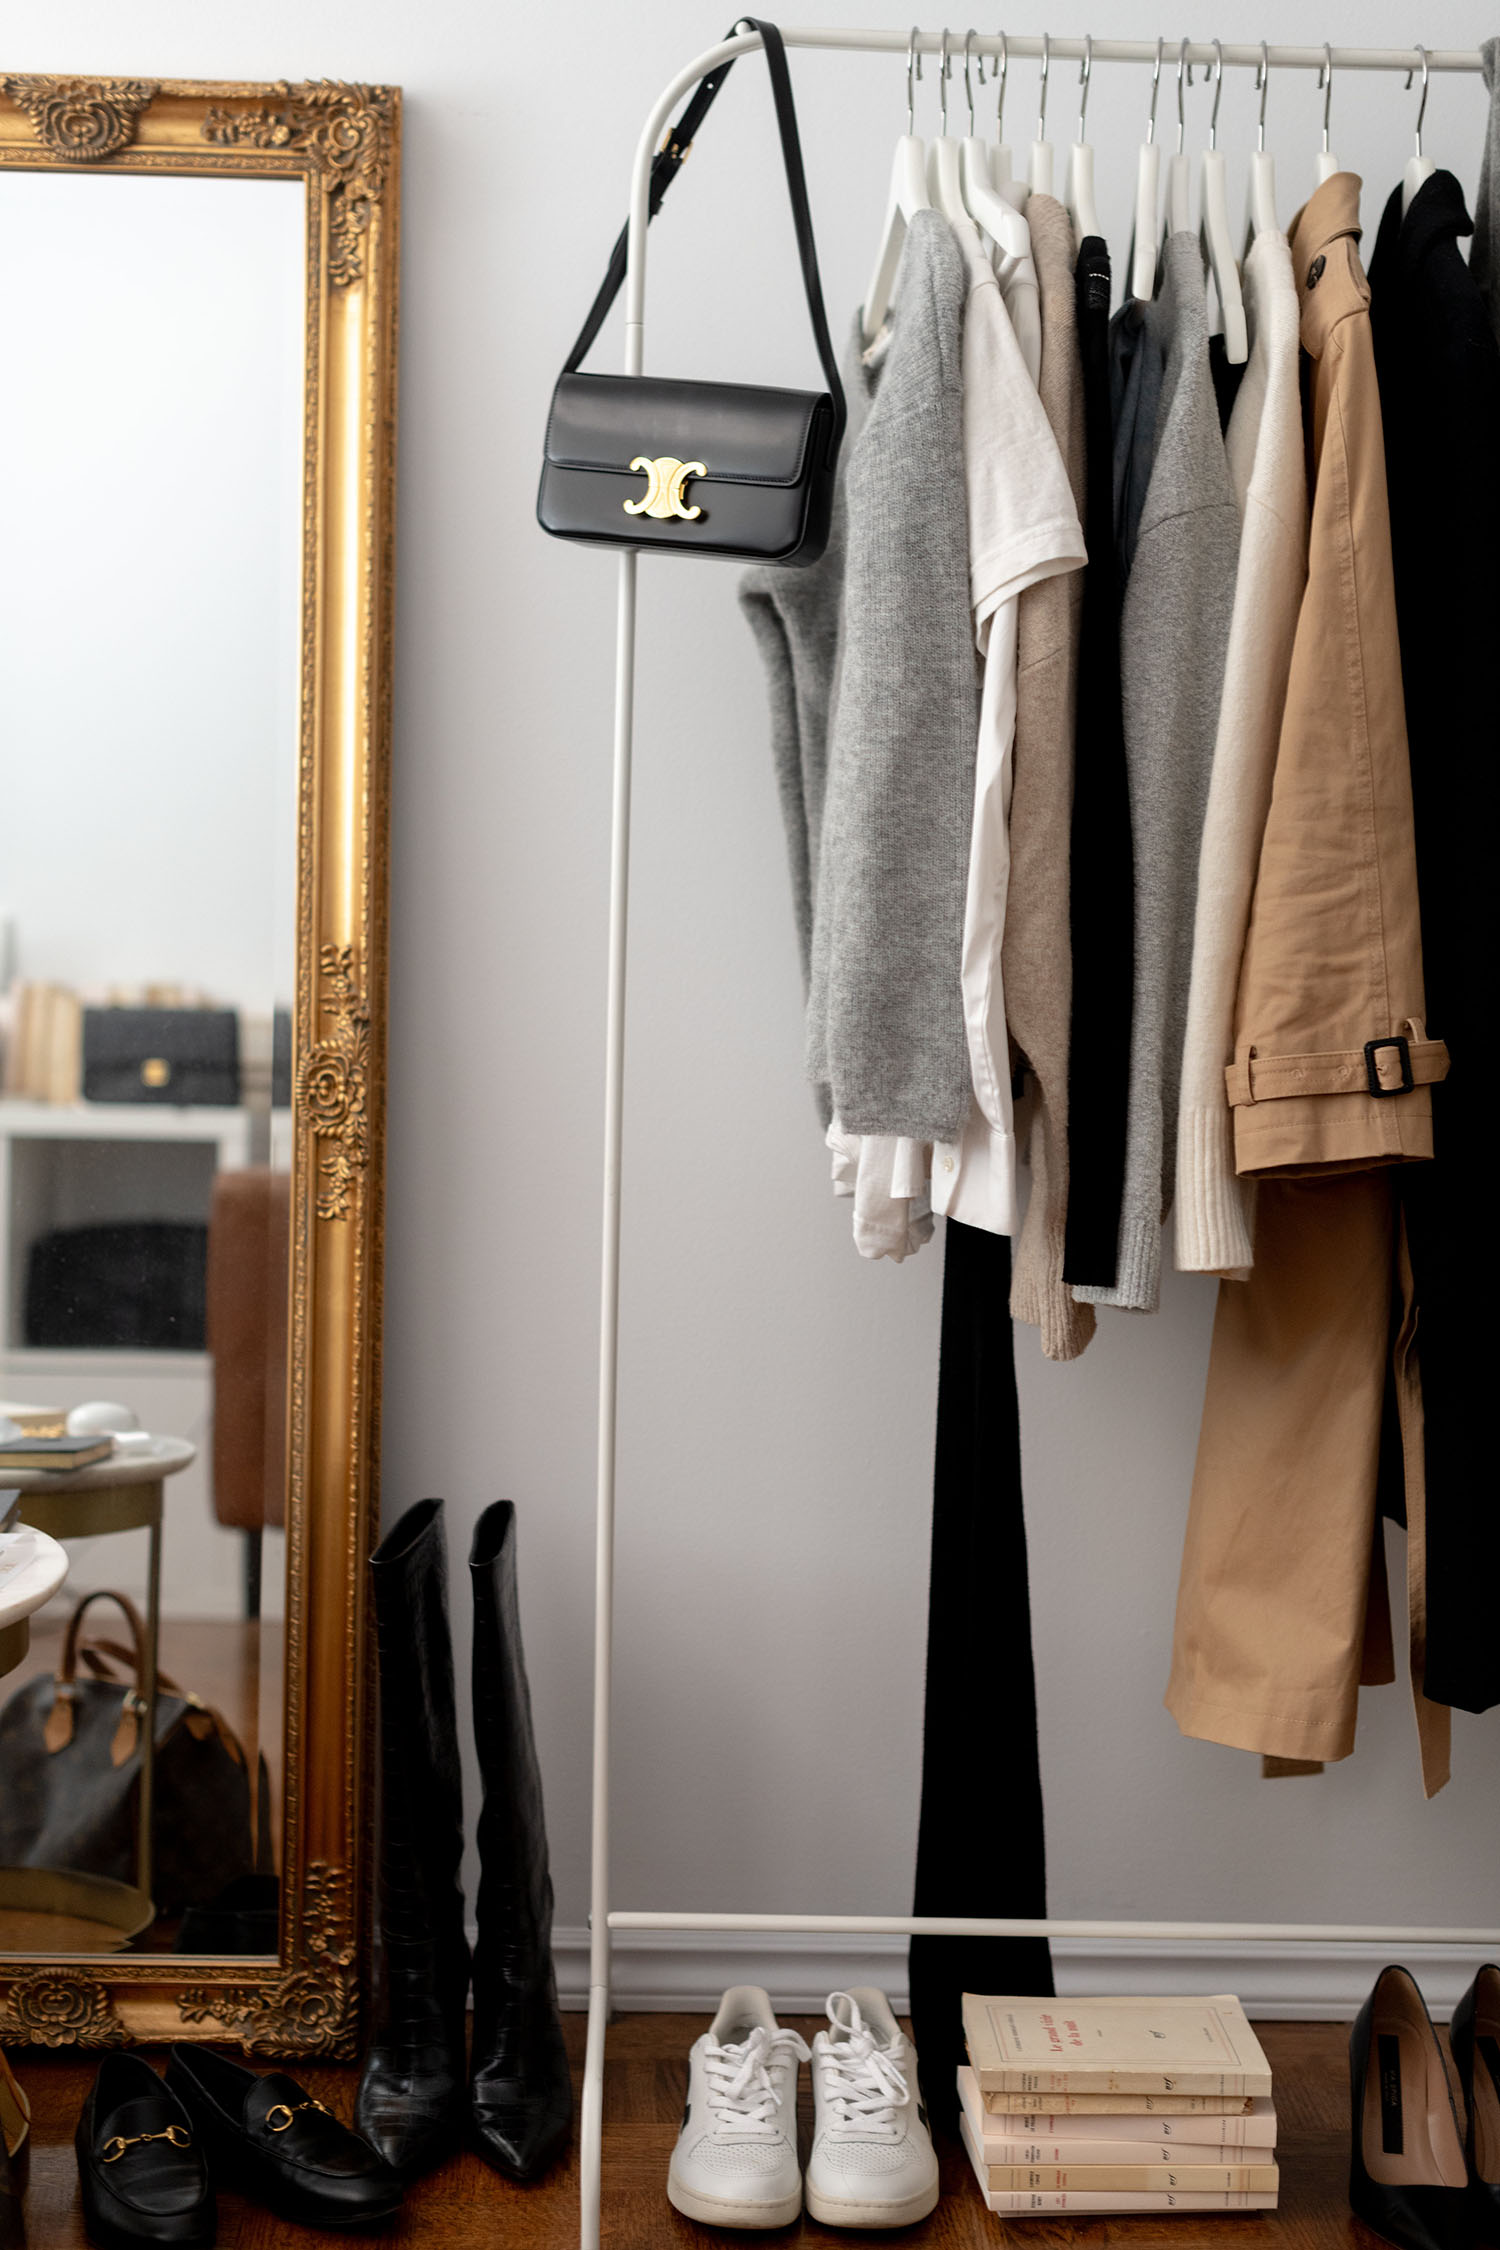 Coco & Voltaire - Celine Triomphe handbag, Vejas sneakers, Louis Vuitton Speedy handbag